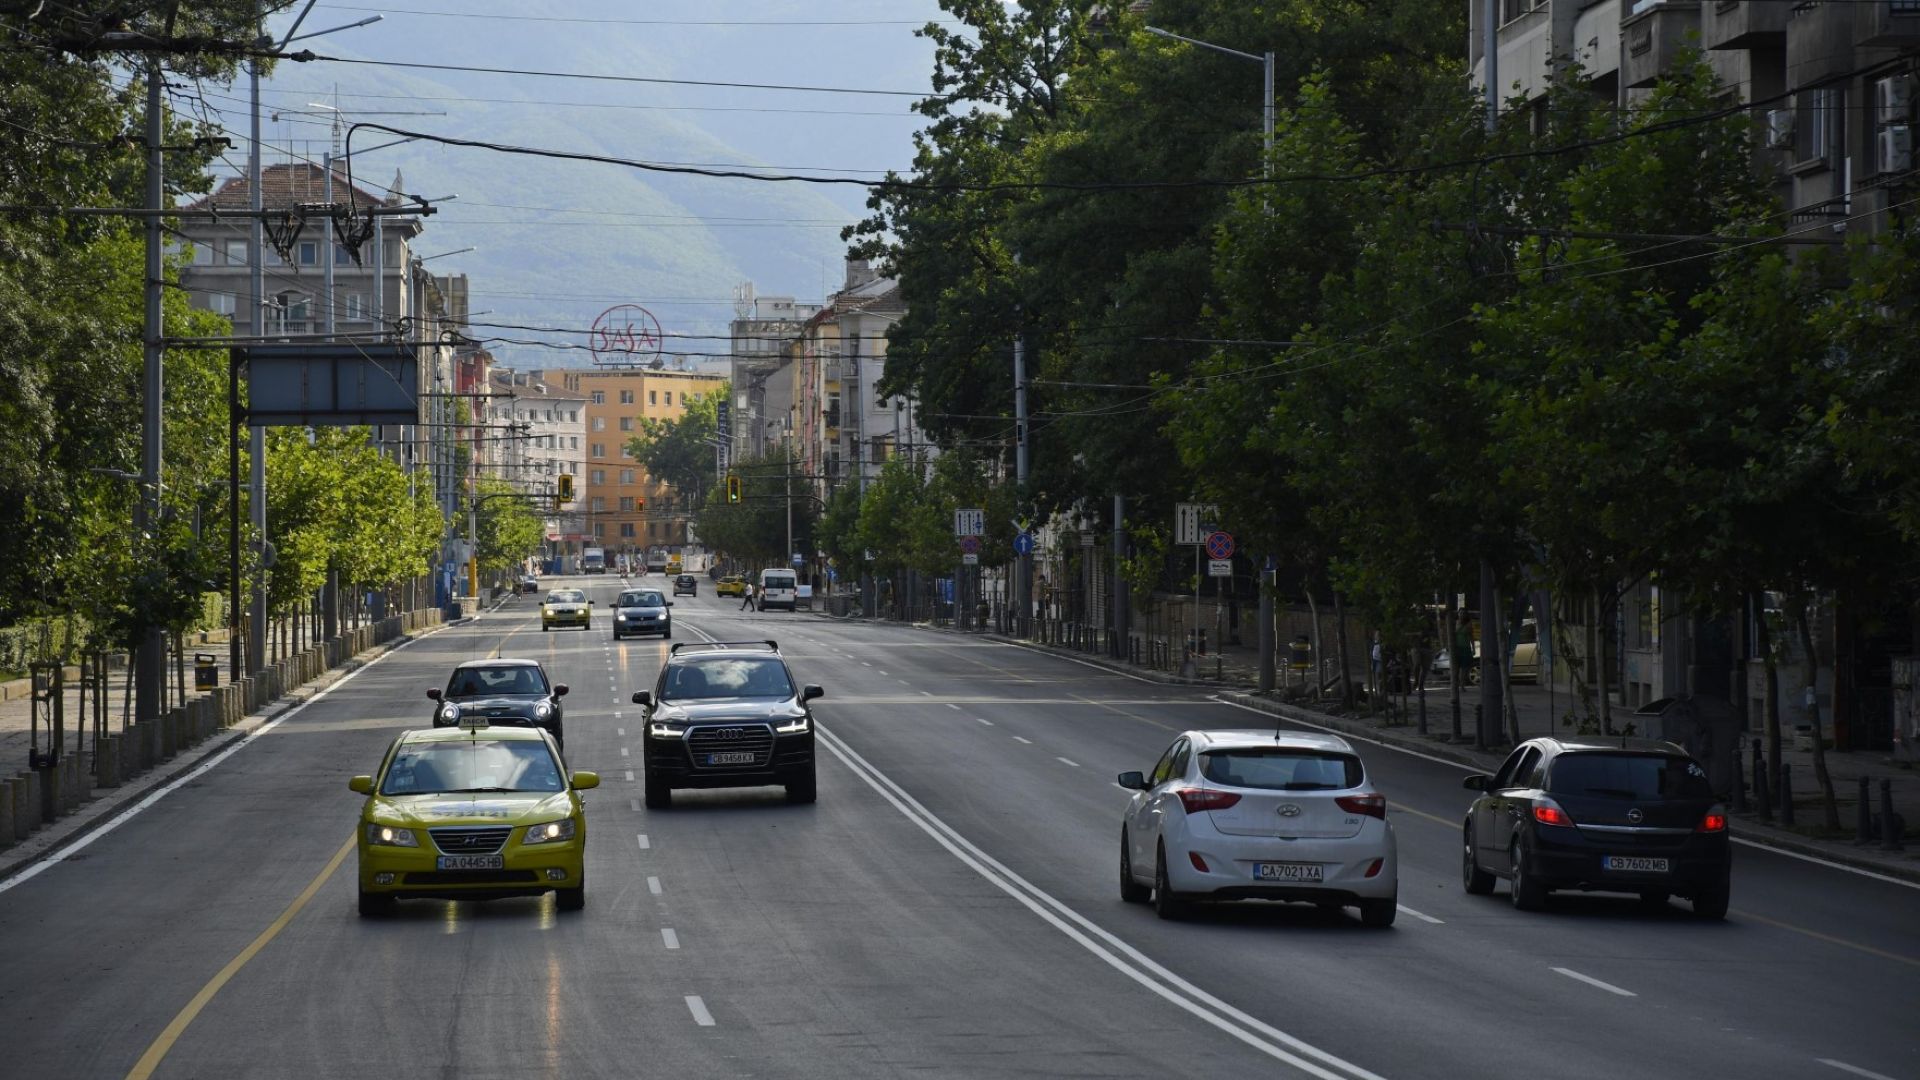 Започва обследване и подмяна на тополите по булевард "Васил Левски" в София